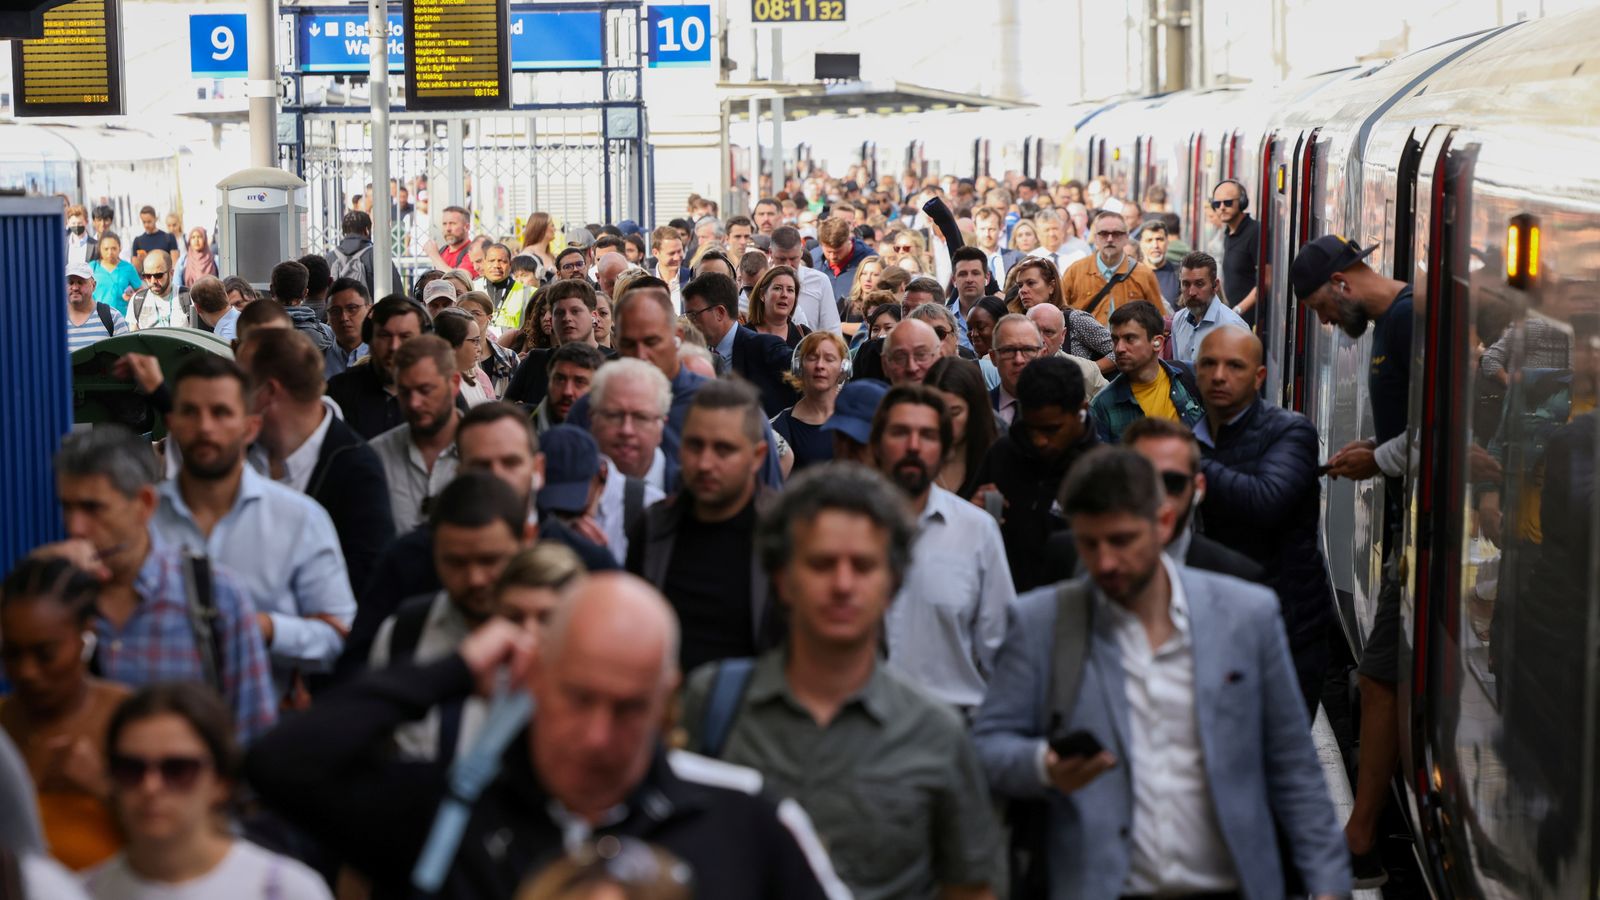 Използването на абонаментни билети за влак се срива, тъй като все повече хора работят от вкъщи